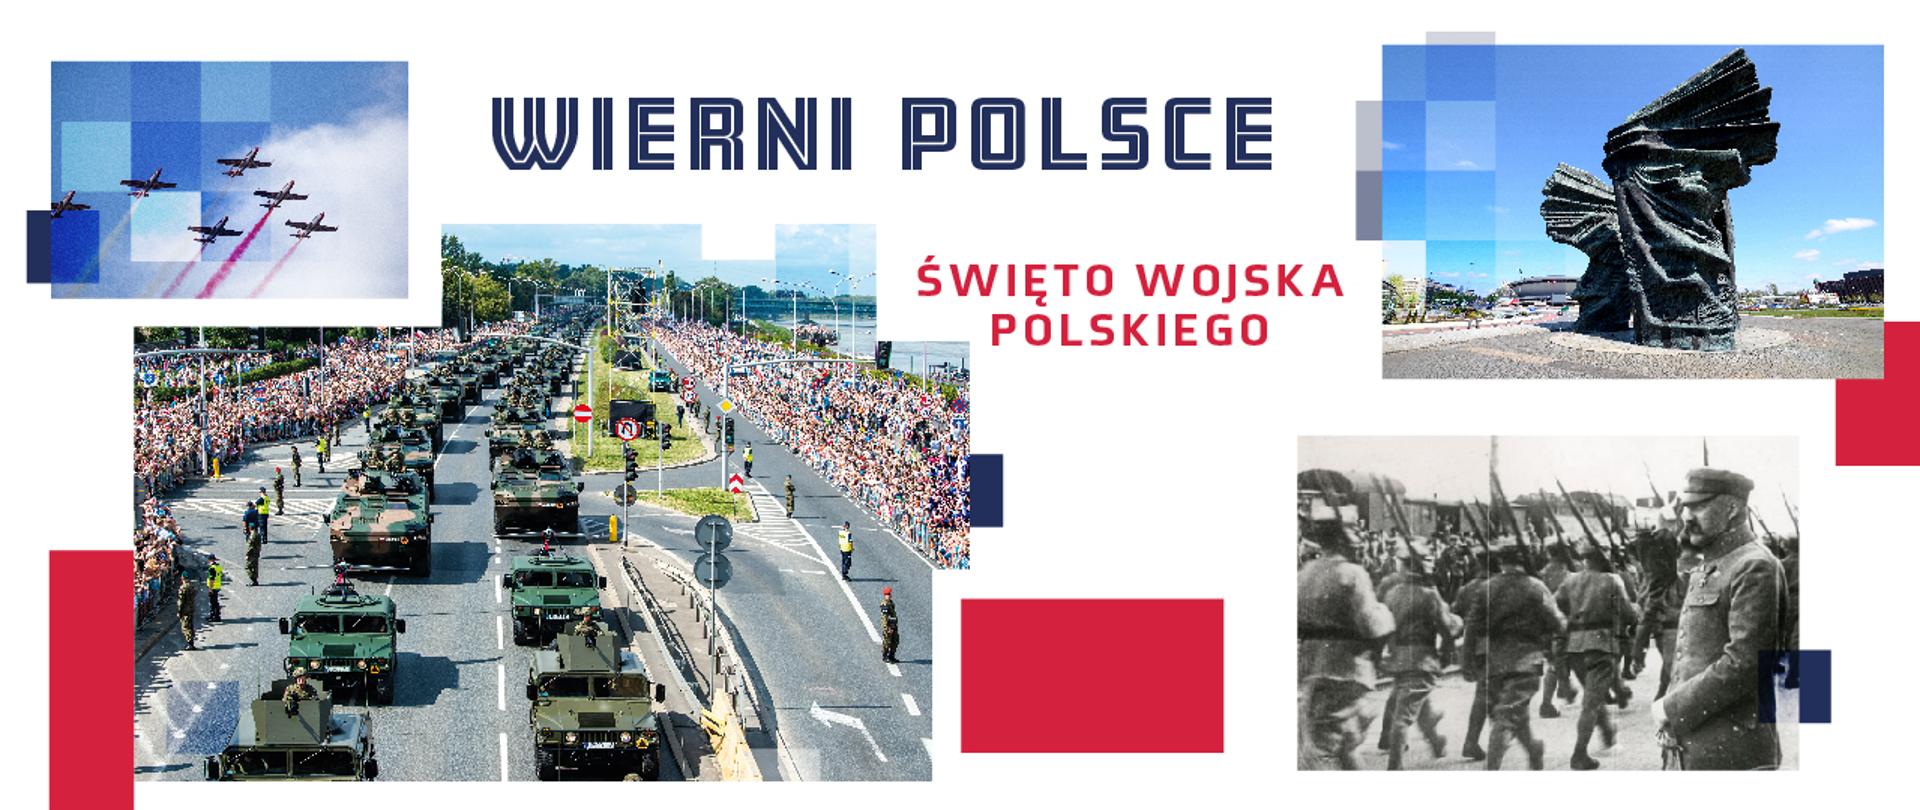 Zapowiedź defilady na Święto Wojska Polskiego "Wierni Polsce"